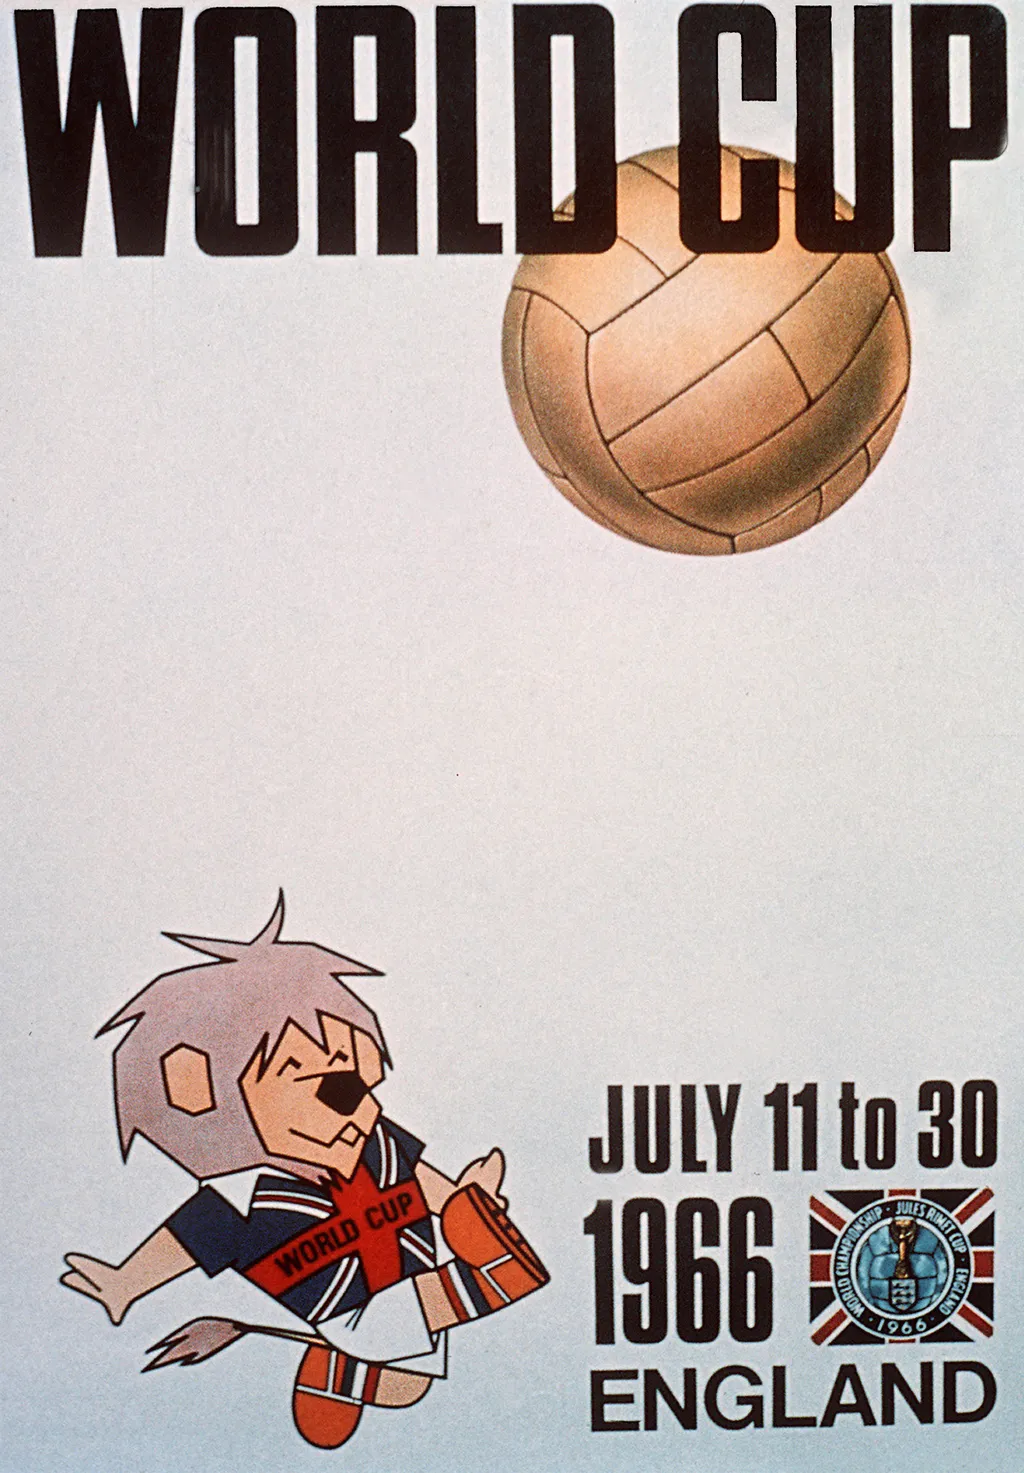 Labdarúgó-világbajnokság, labdarúgóvébé, futballvébé, labdarúgás, hivatalos plakát, poszter, 1966, Anglia 